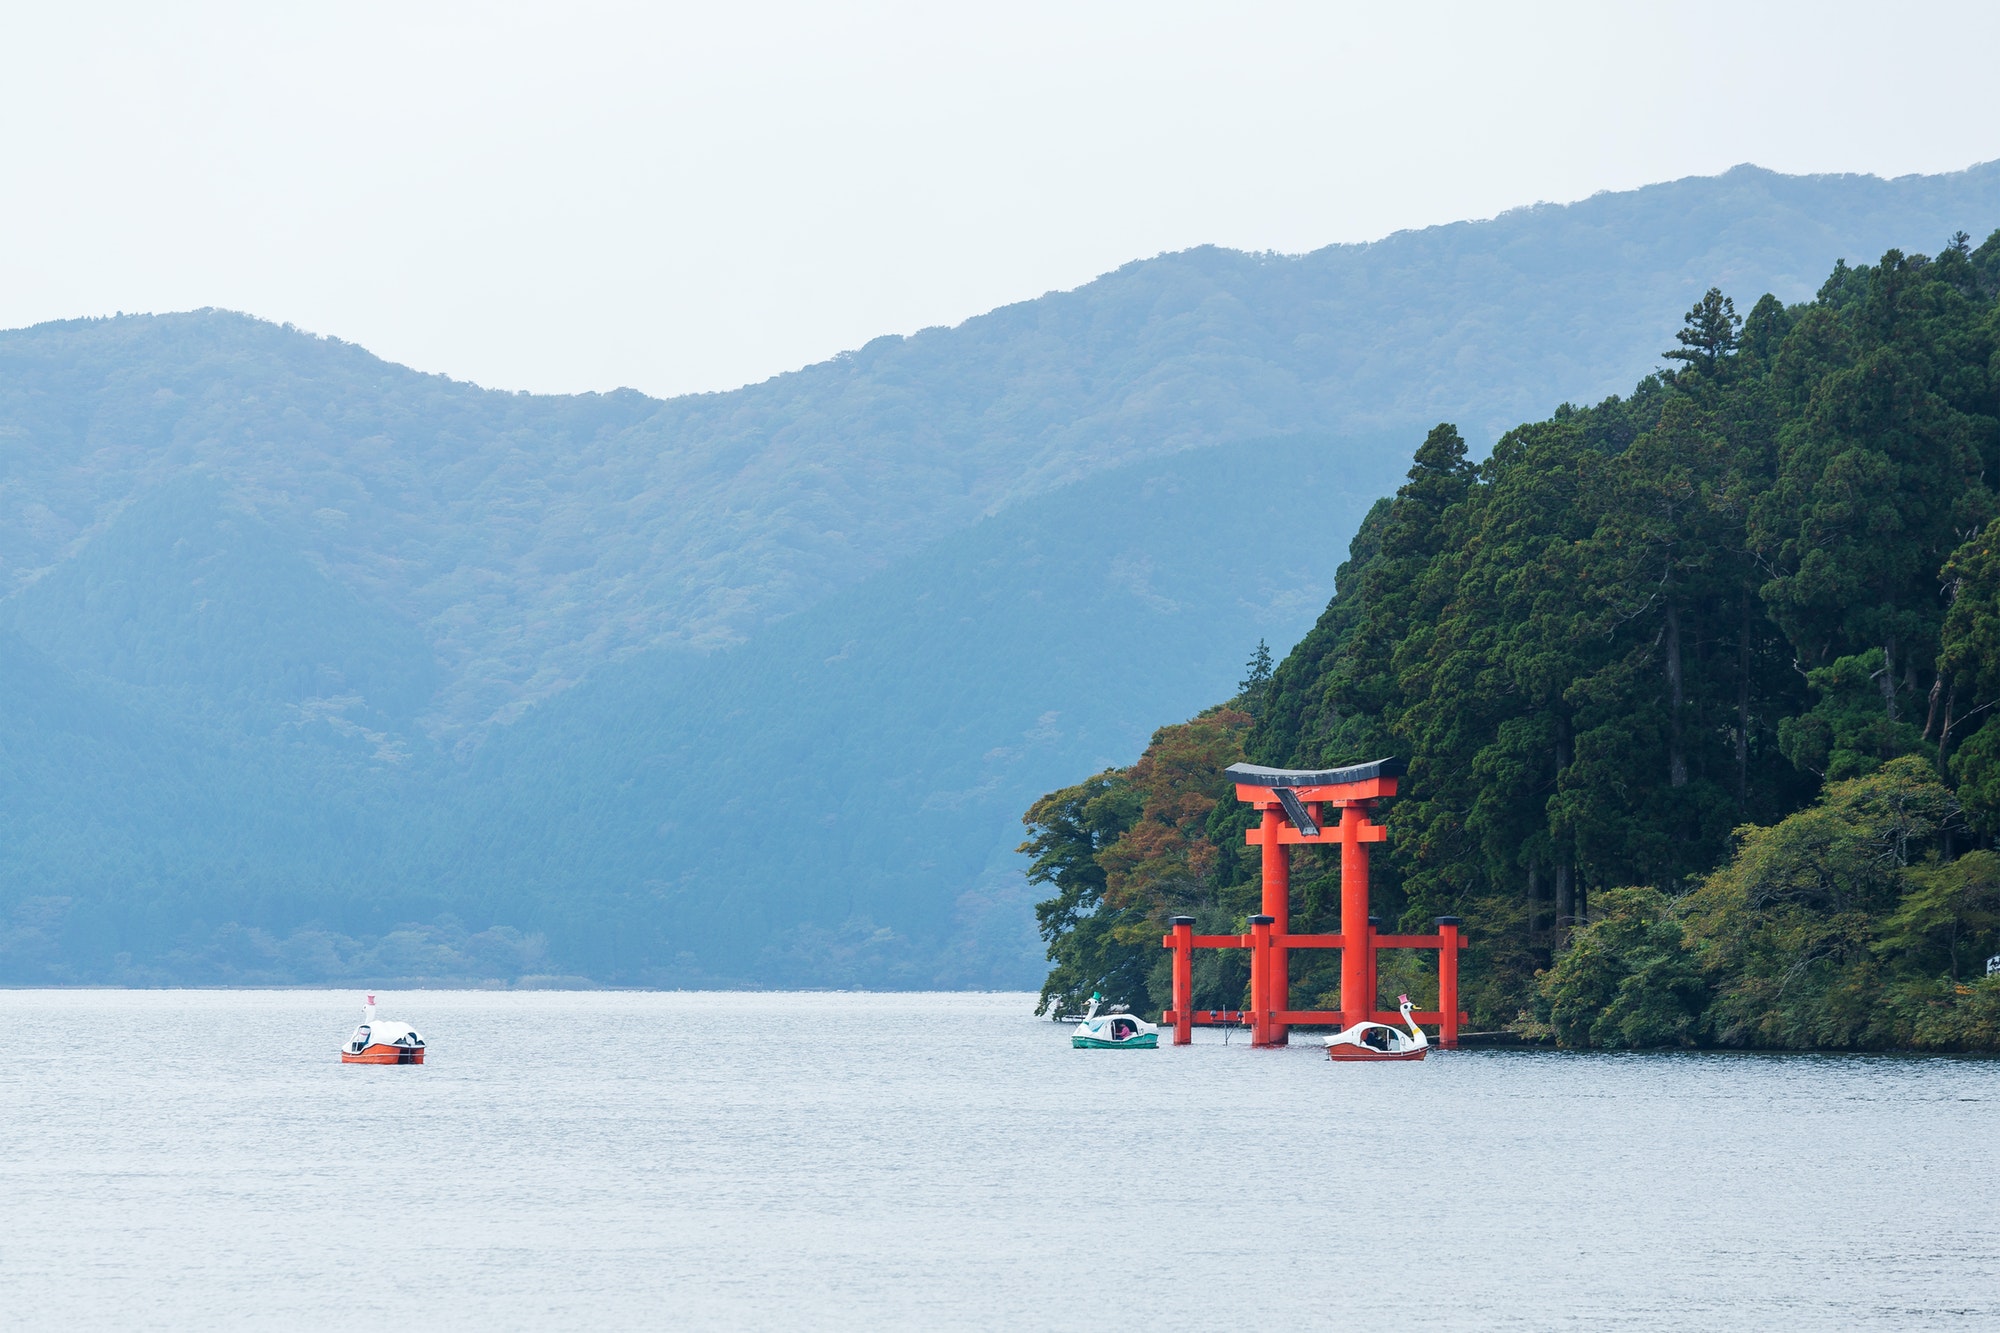 Lake Ashinoko in Hakone of Japan